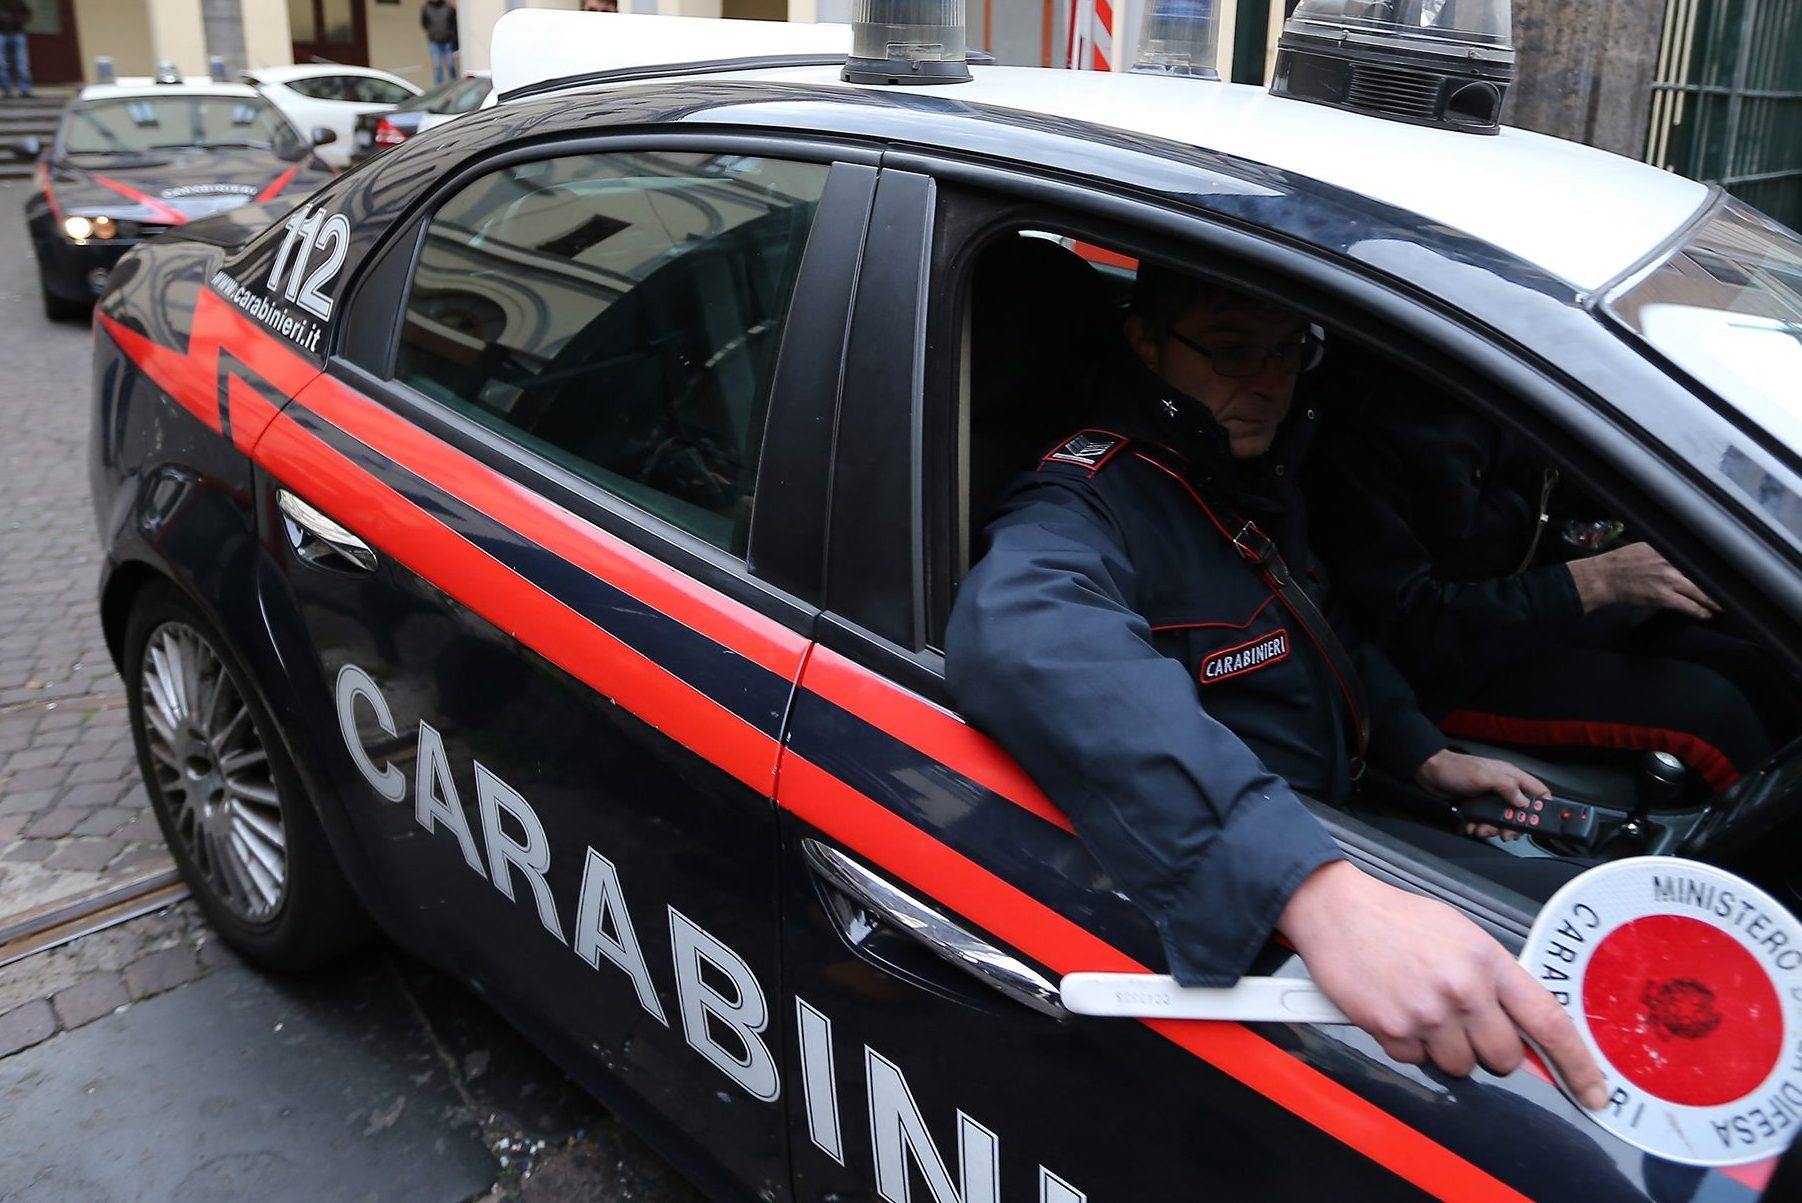 Un 13enne è stato pestato da 20 coetanei con mazze e tirapugni: è accaduto a San Giorgio a Cremano